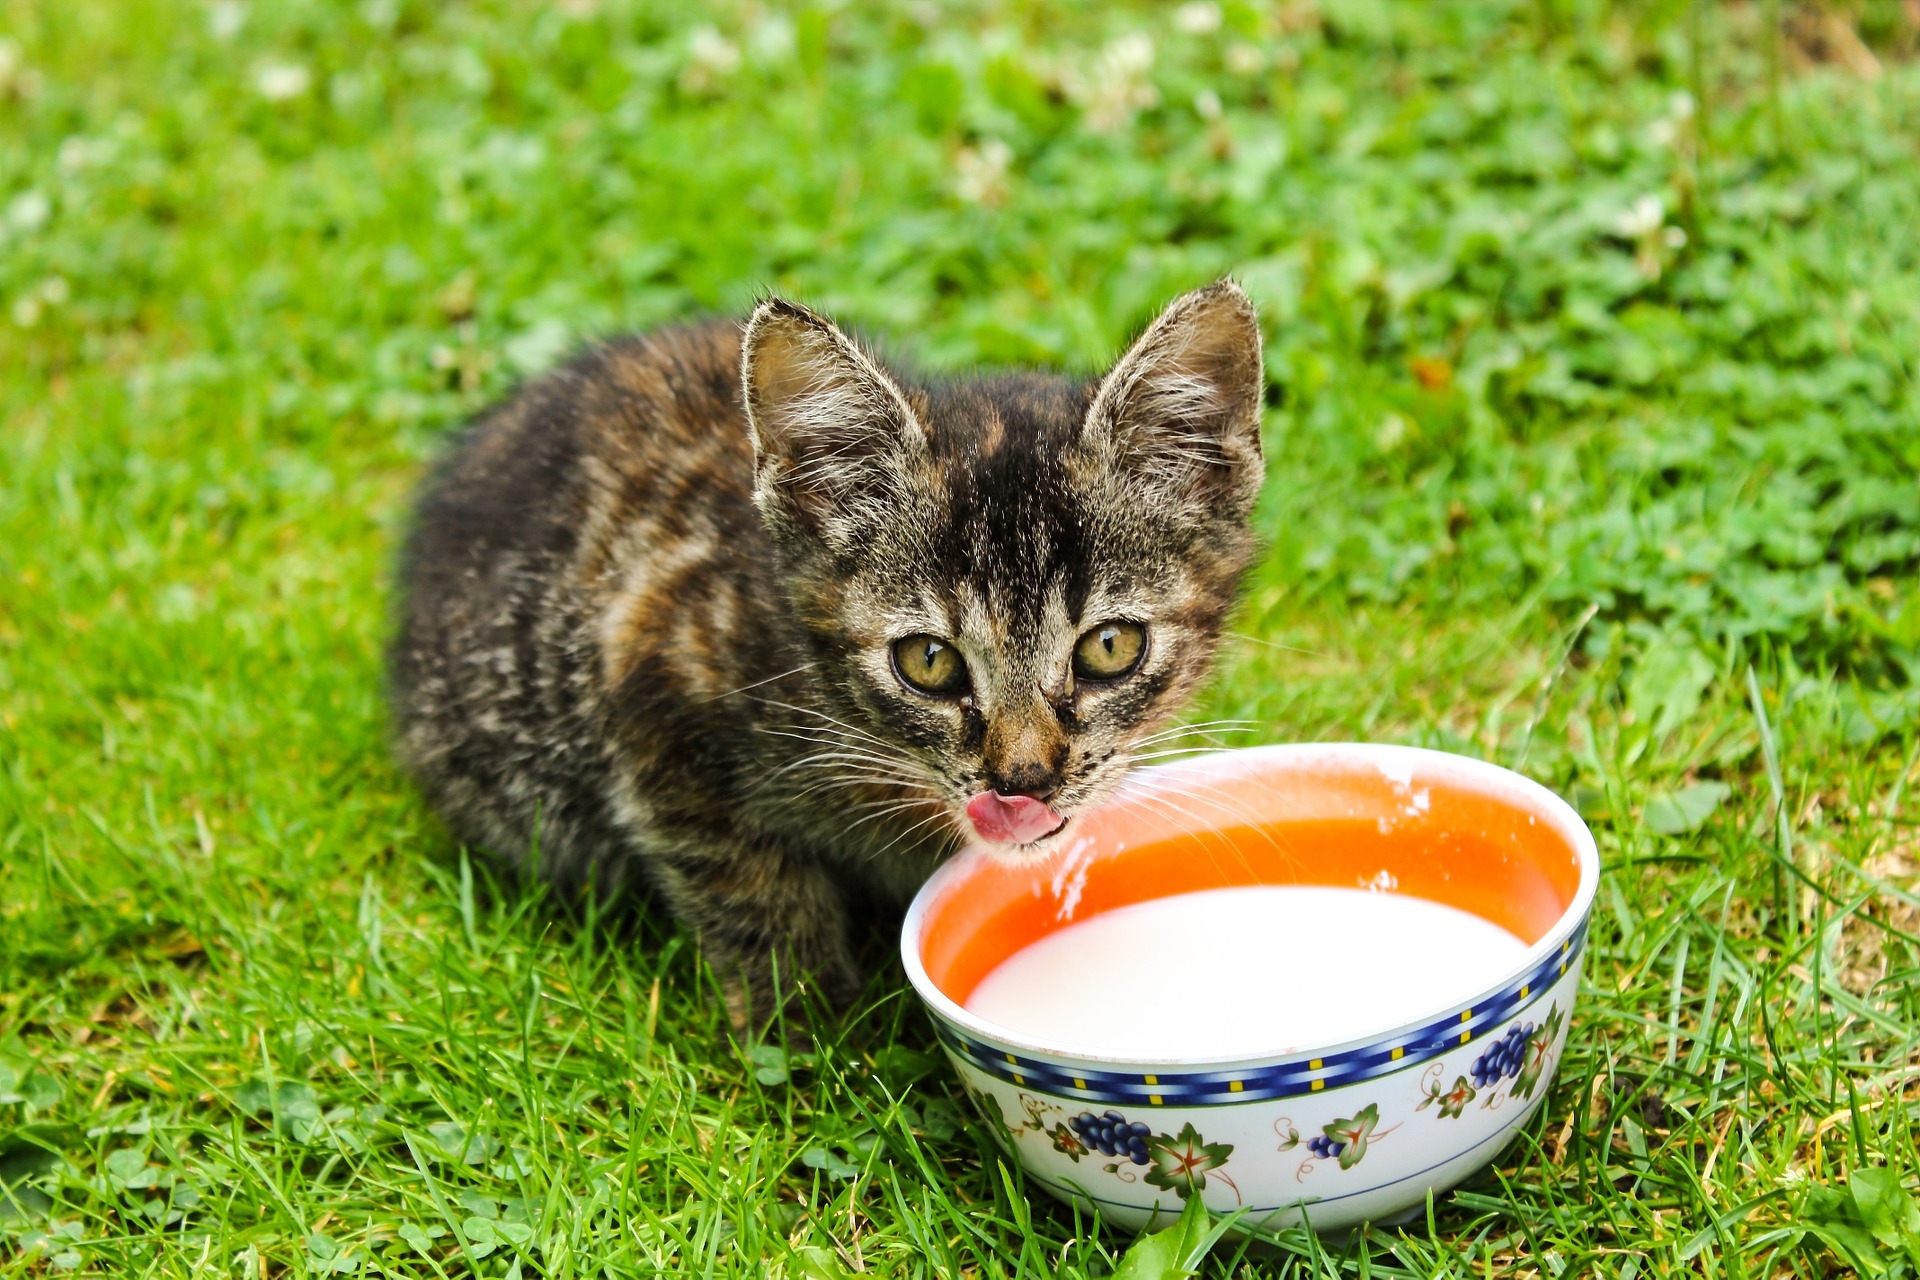 Menagerry Tumba tierra 8 alimentos prohibidos para gatos que no debes compartir con tu minino